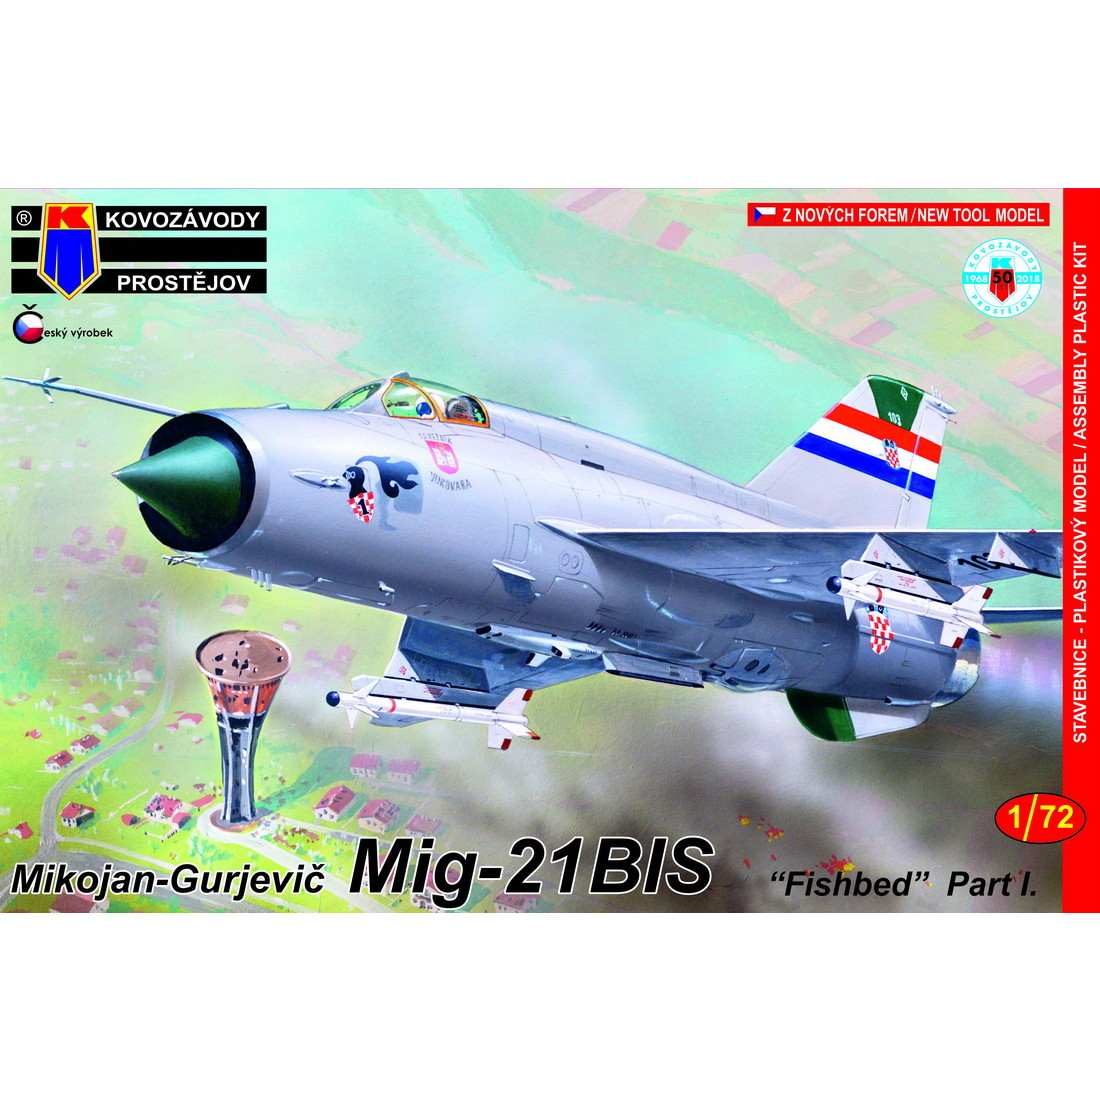 【新製品】KPM0100 MiG-21bis フィッシュベッド パートI